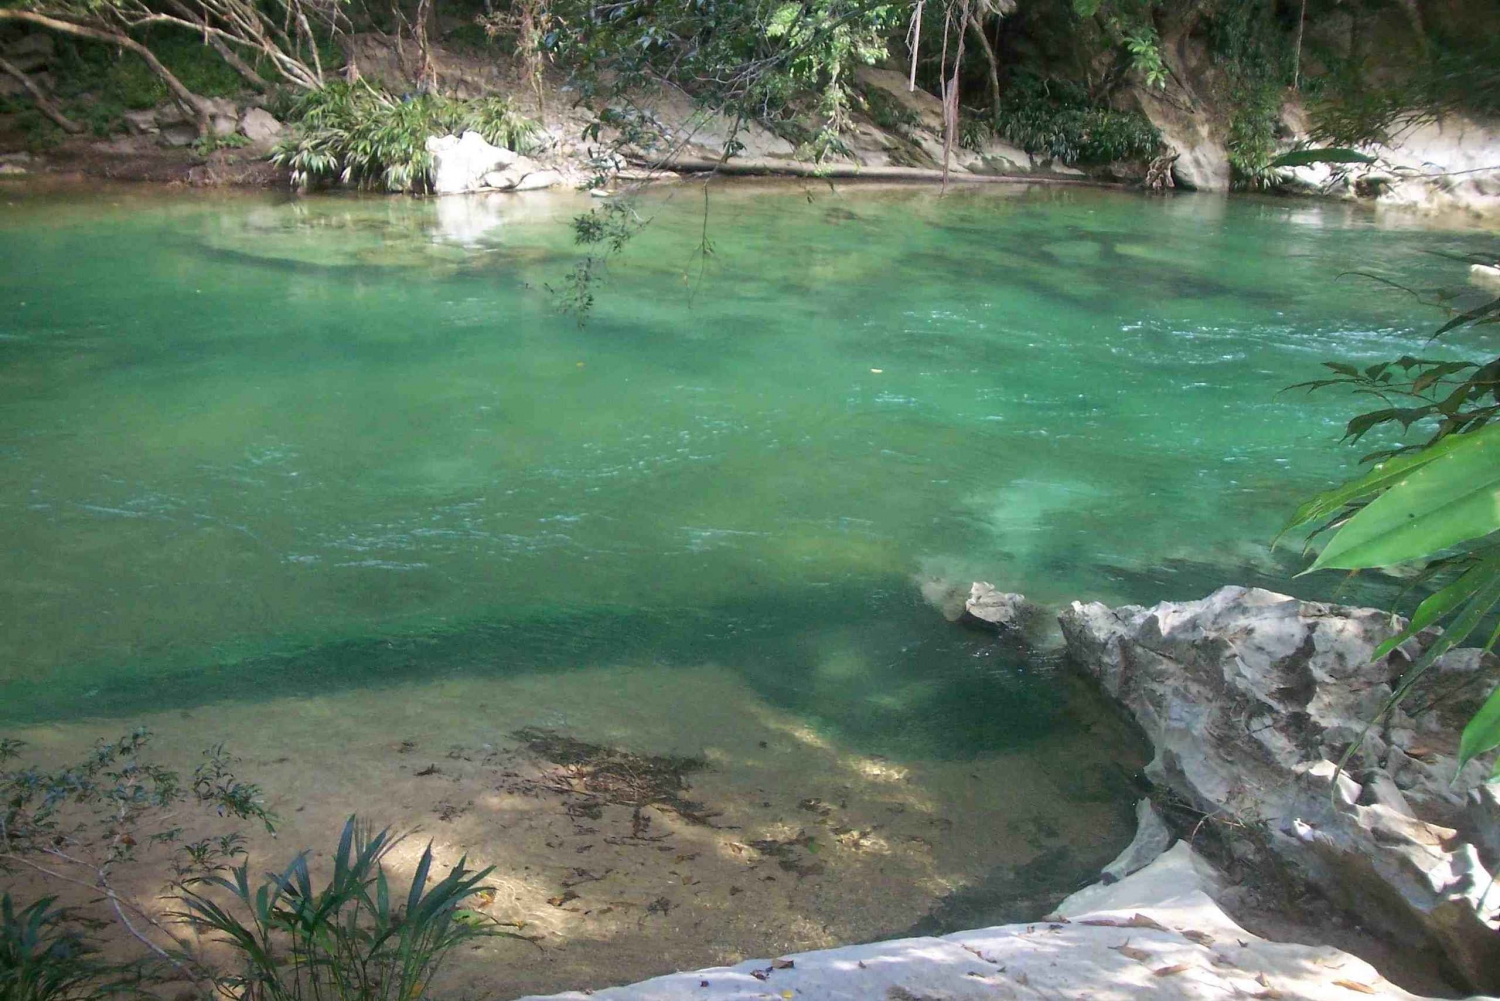 Description Rio-claro-jungle-river-private-tour-from-medellin-527980